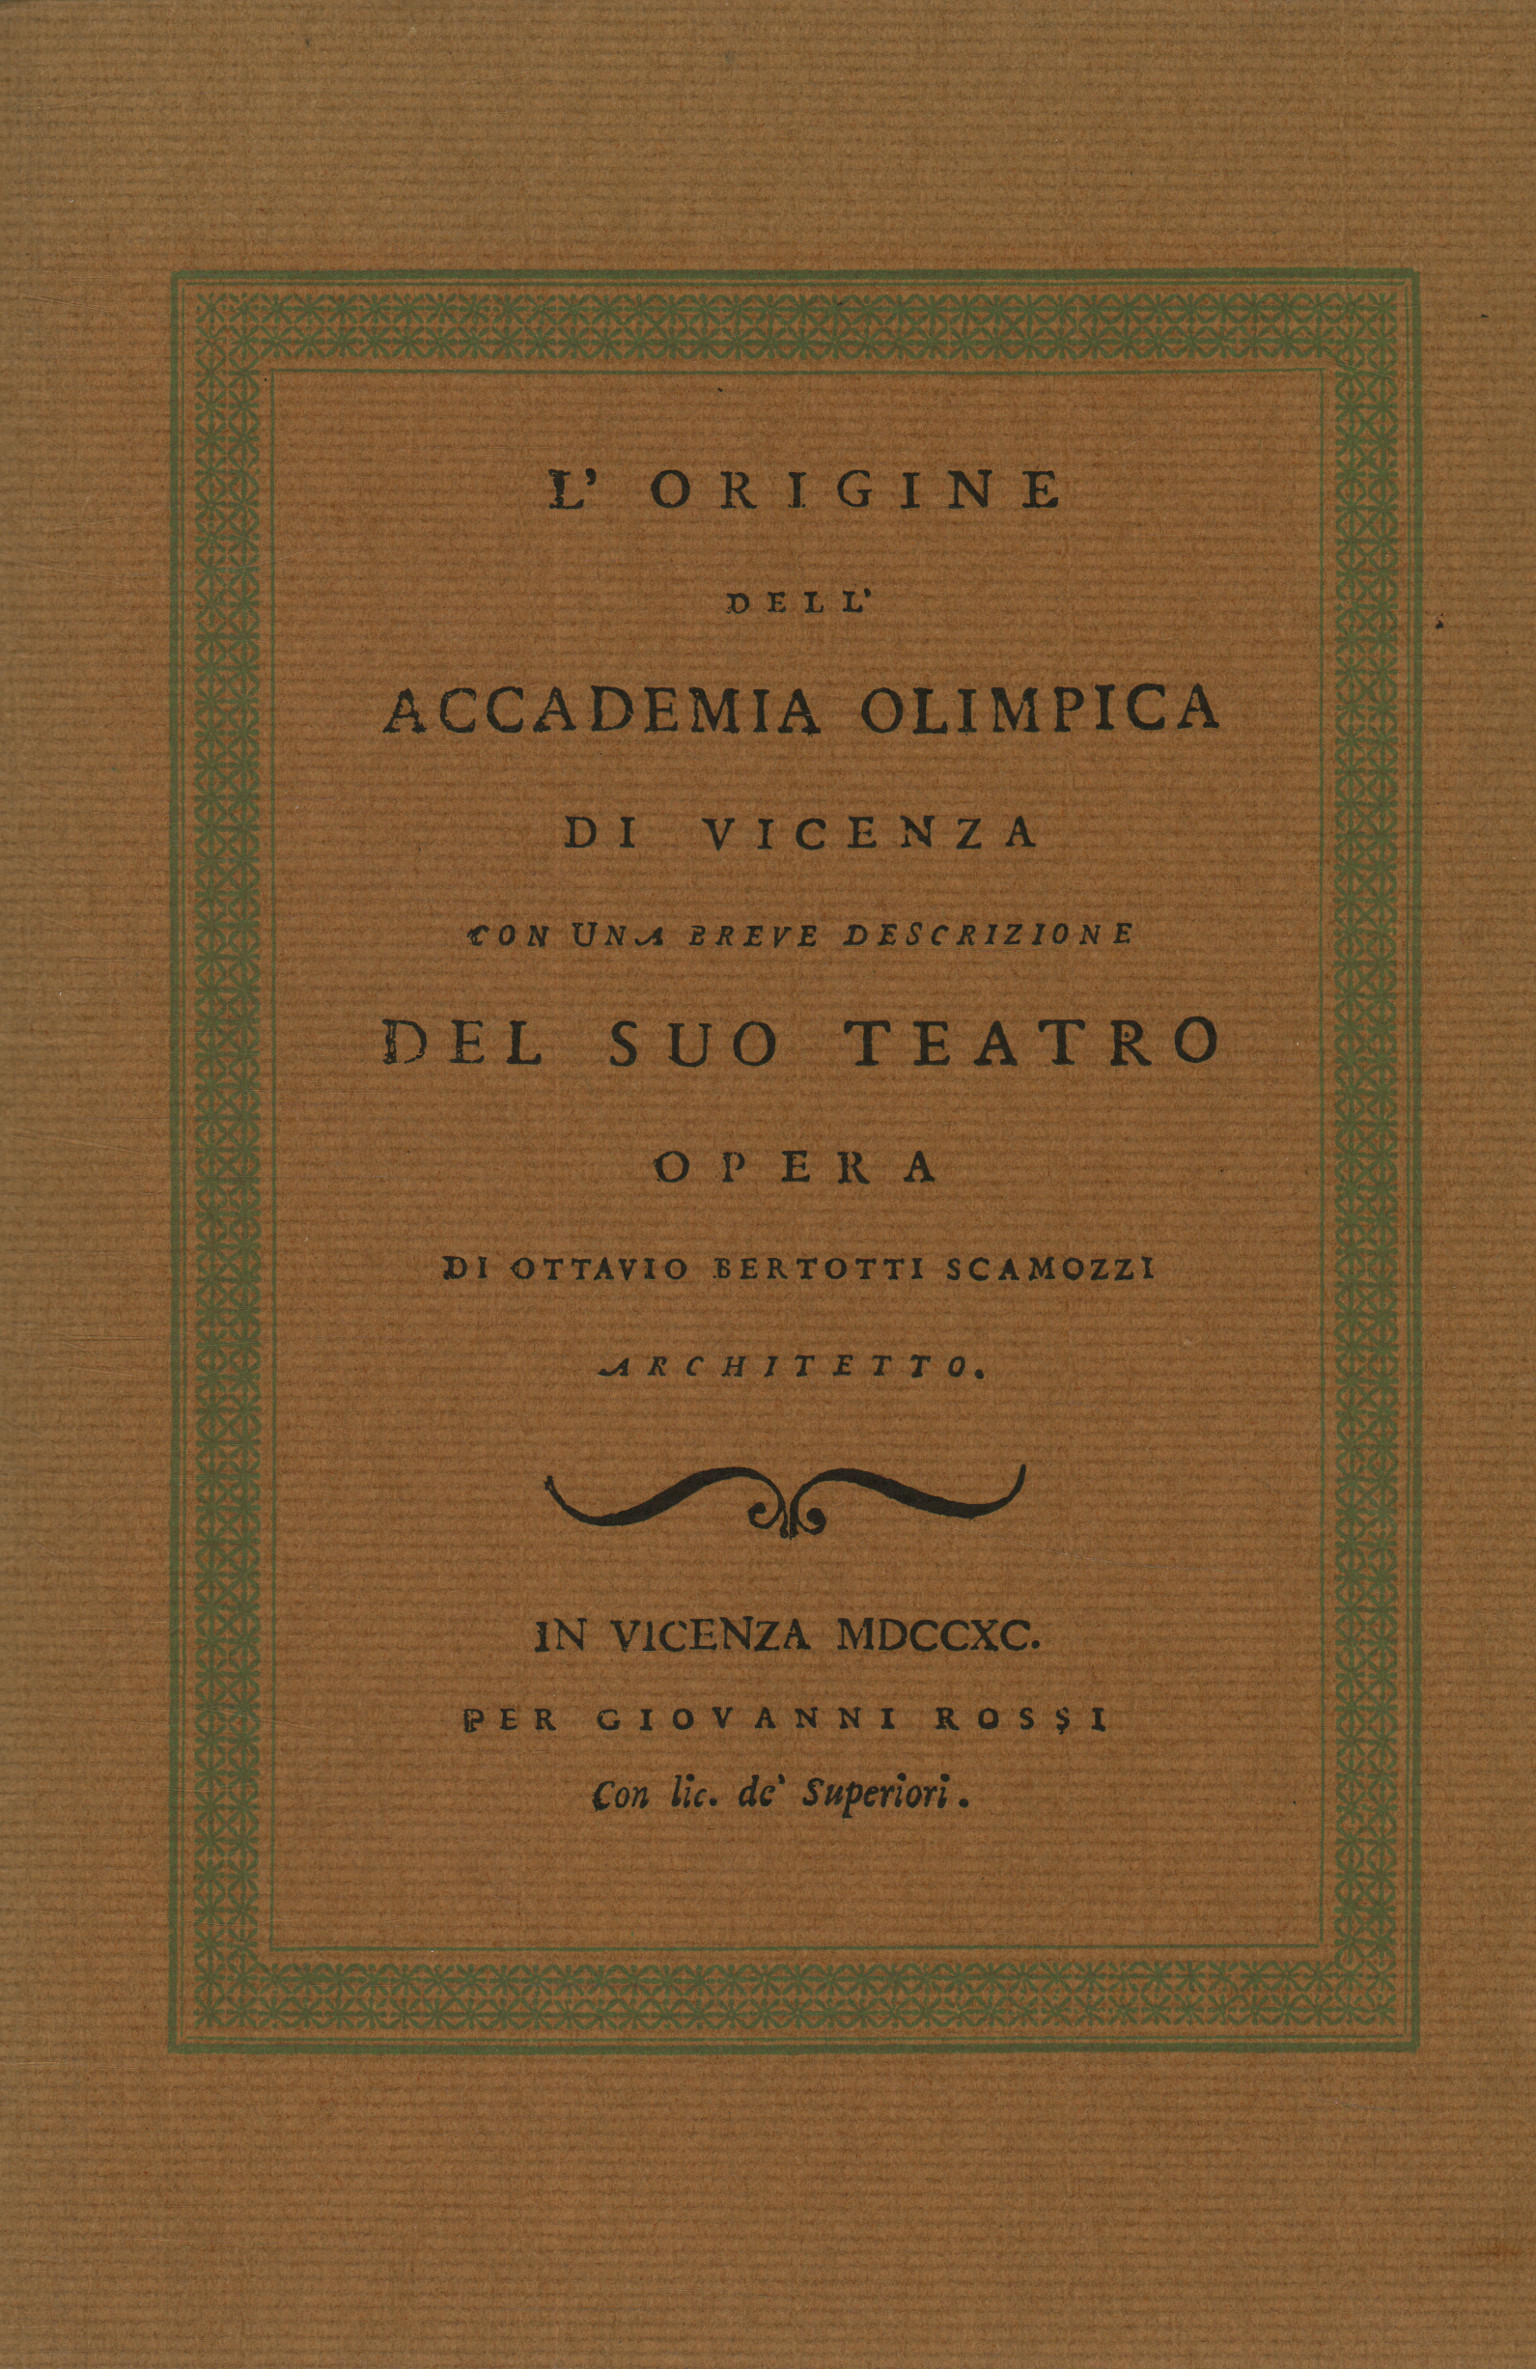 Der Ursprung der Vicenza Olympic Academy mit Ottavio Bertotti Scamozzi